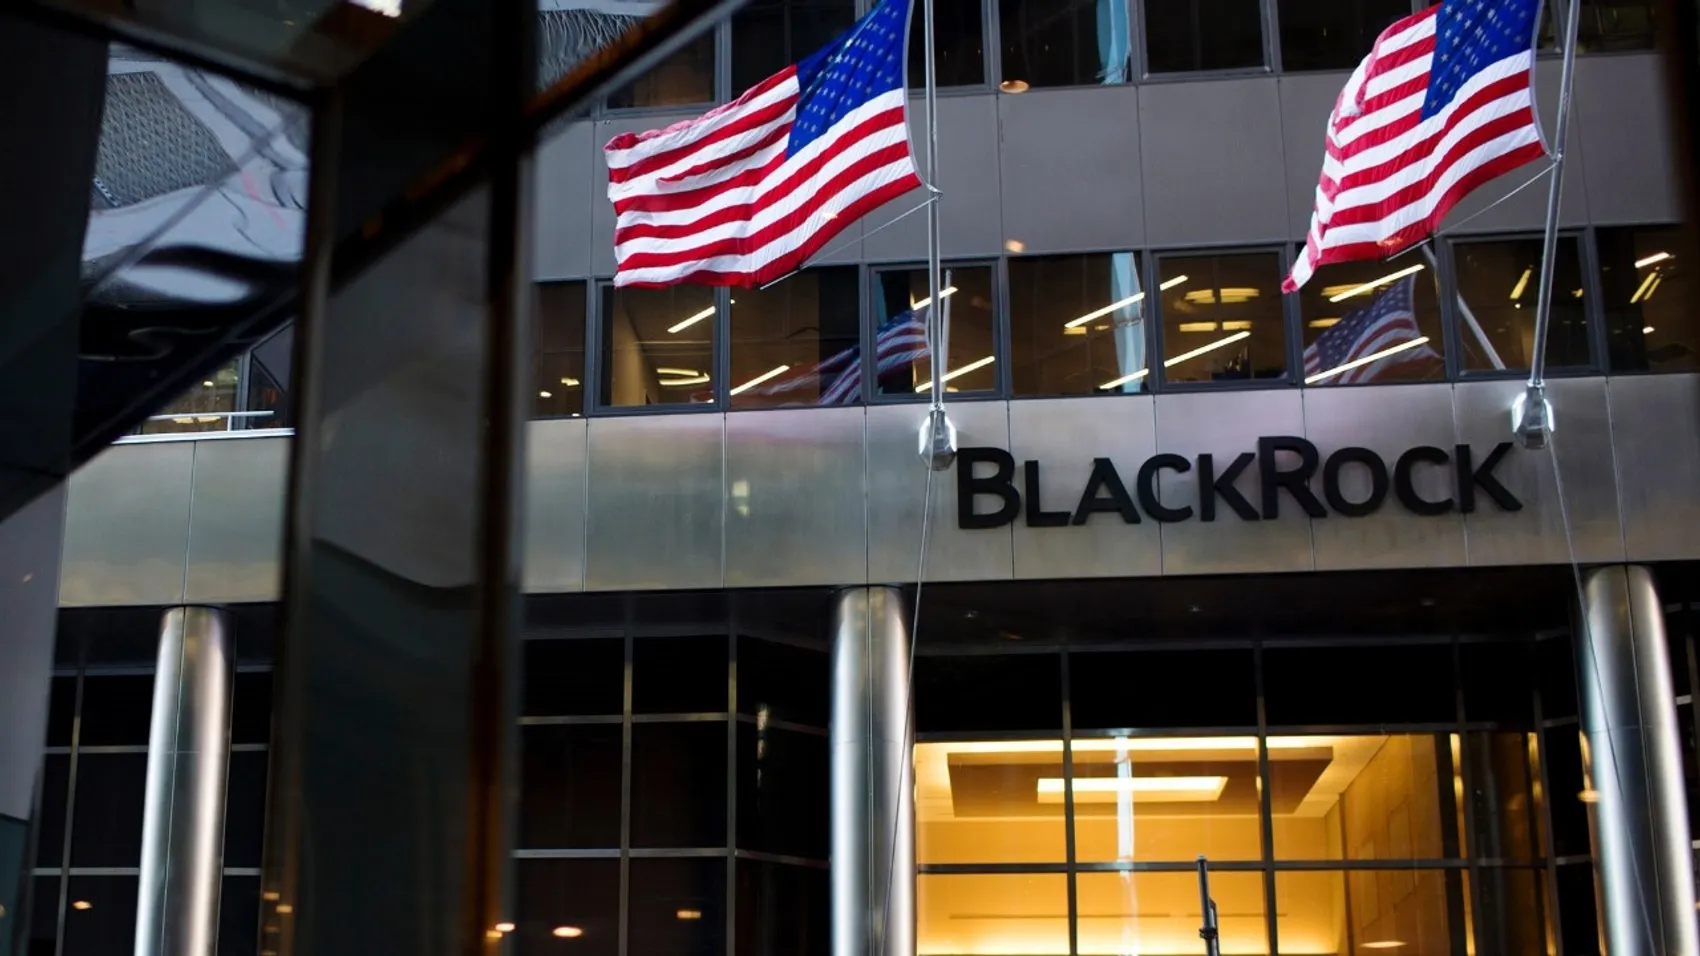 BlackRock 10 trilyon dolar ile rekor varlığa ulaştı